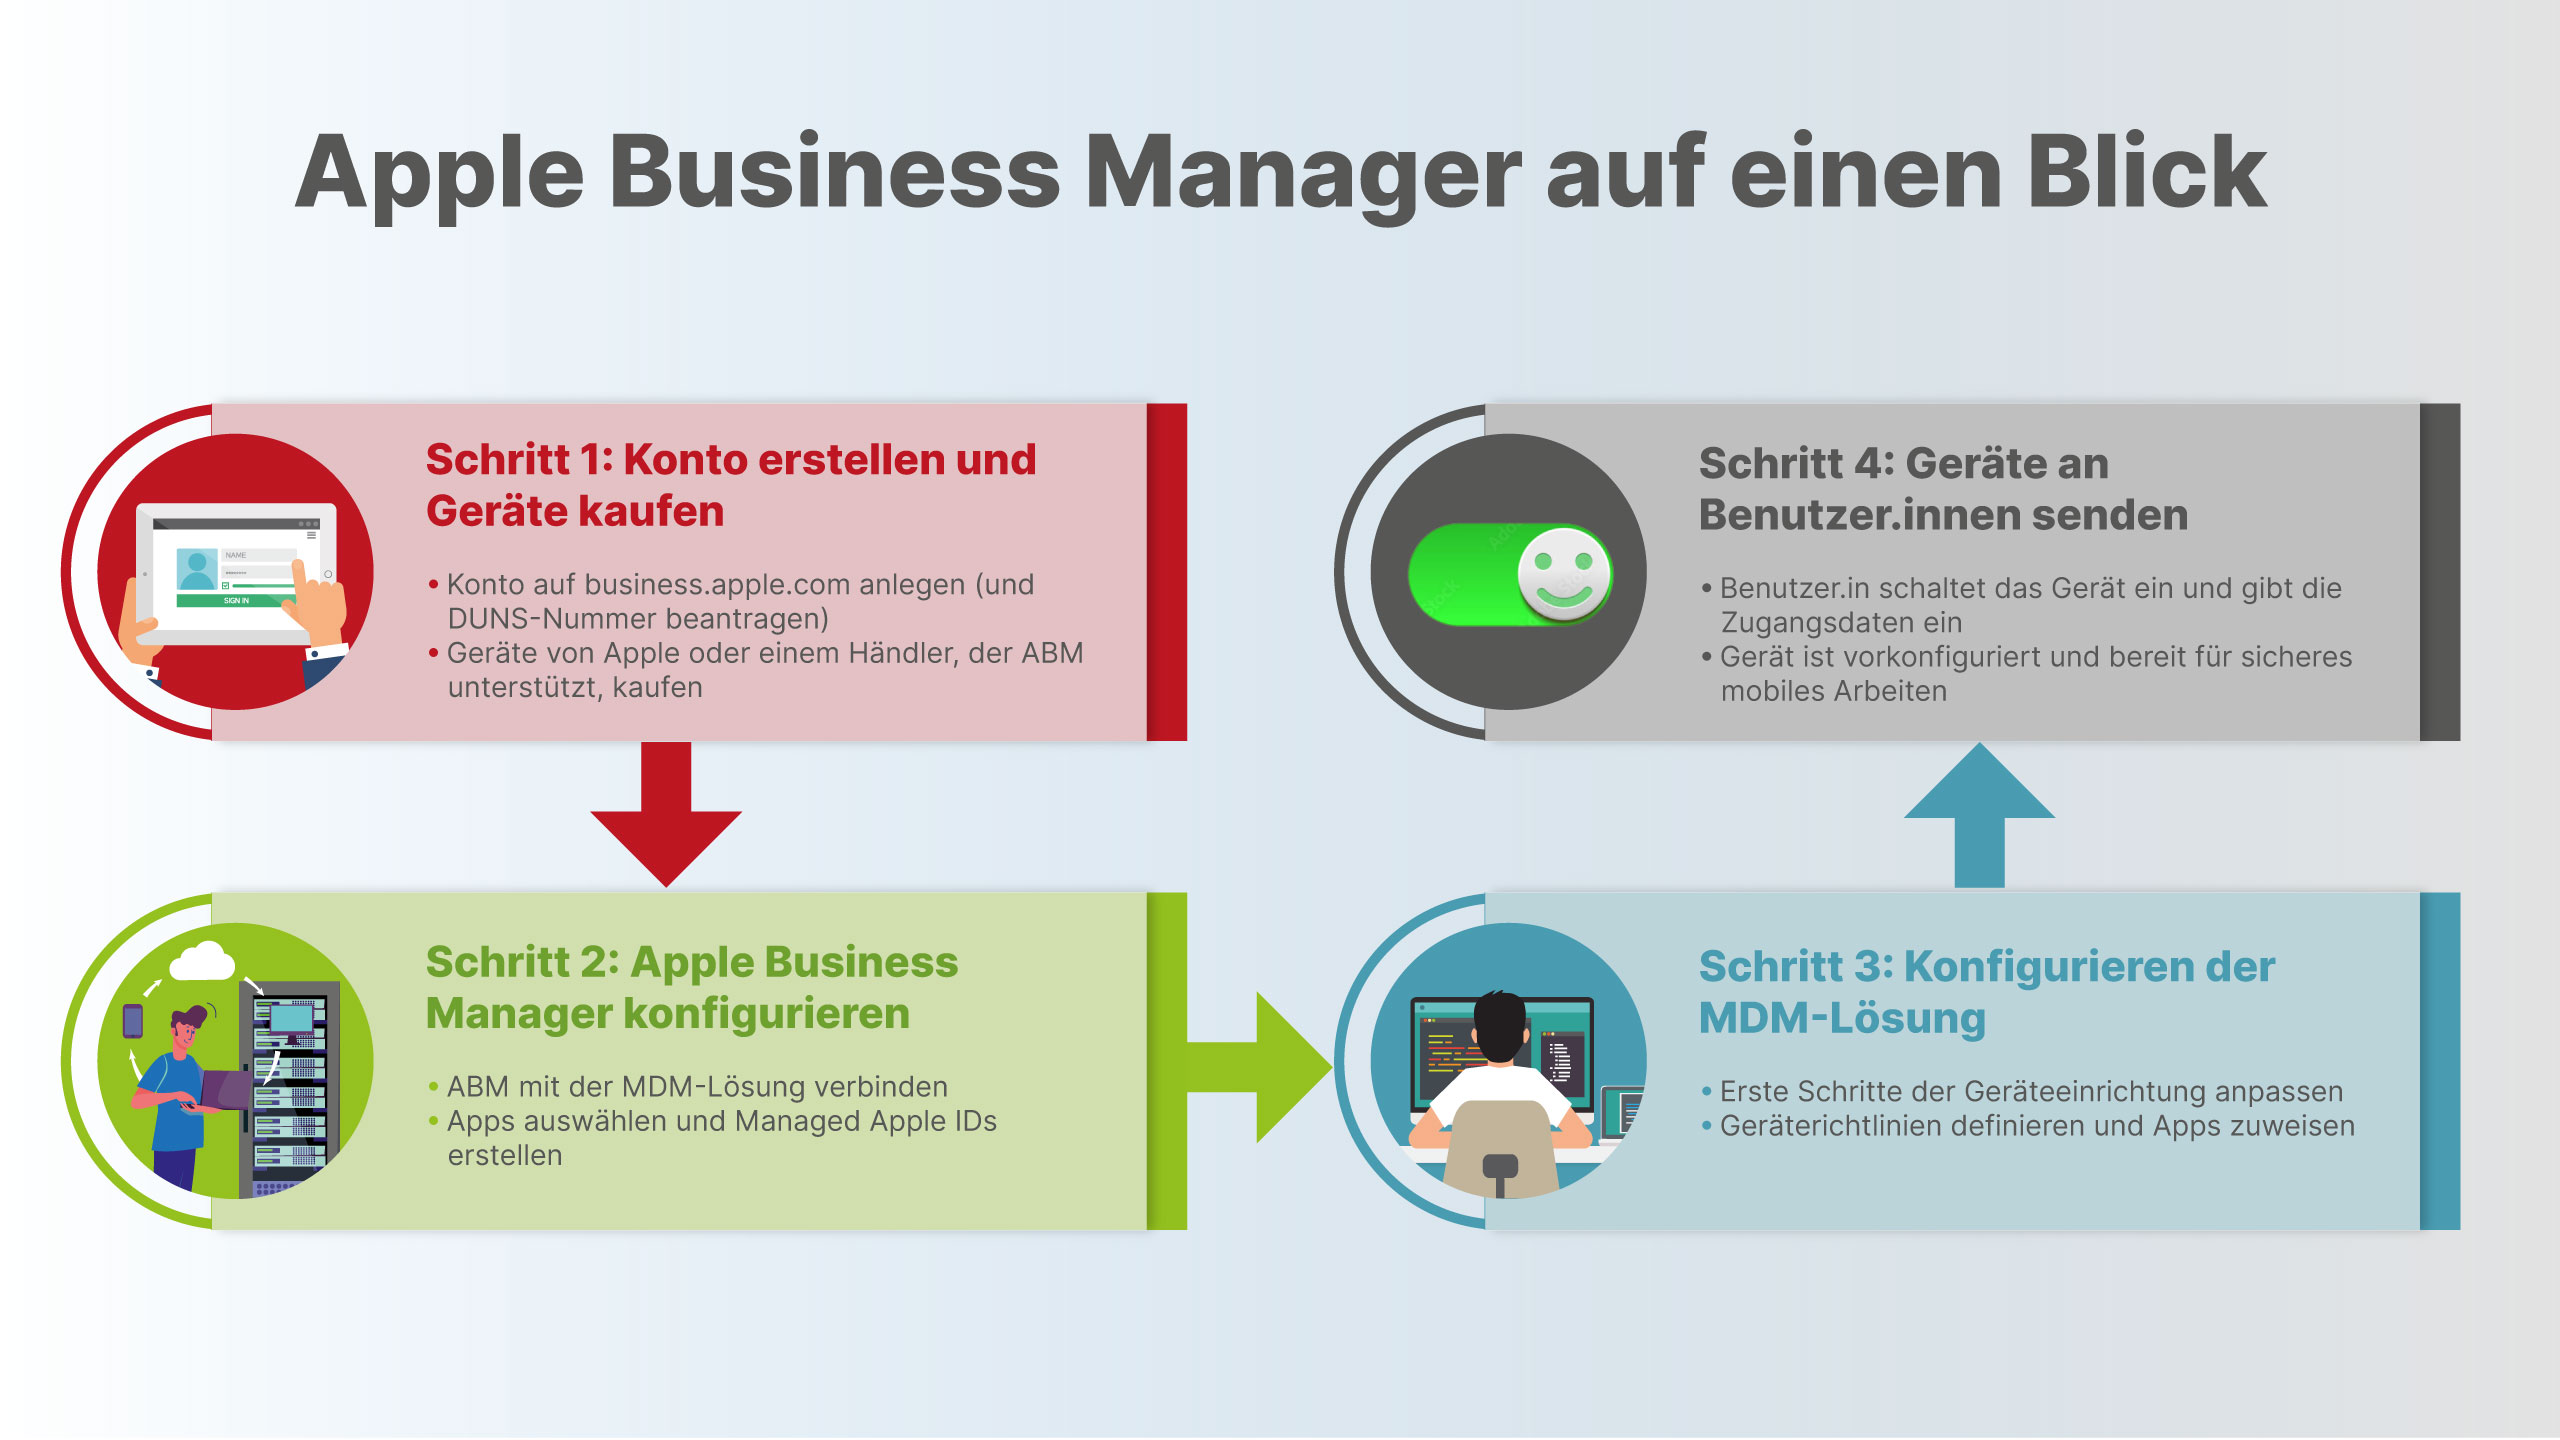 Apple Business Manager auf einen Blick